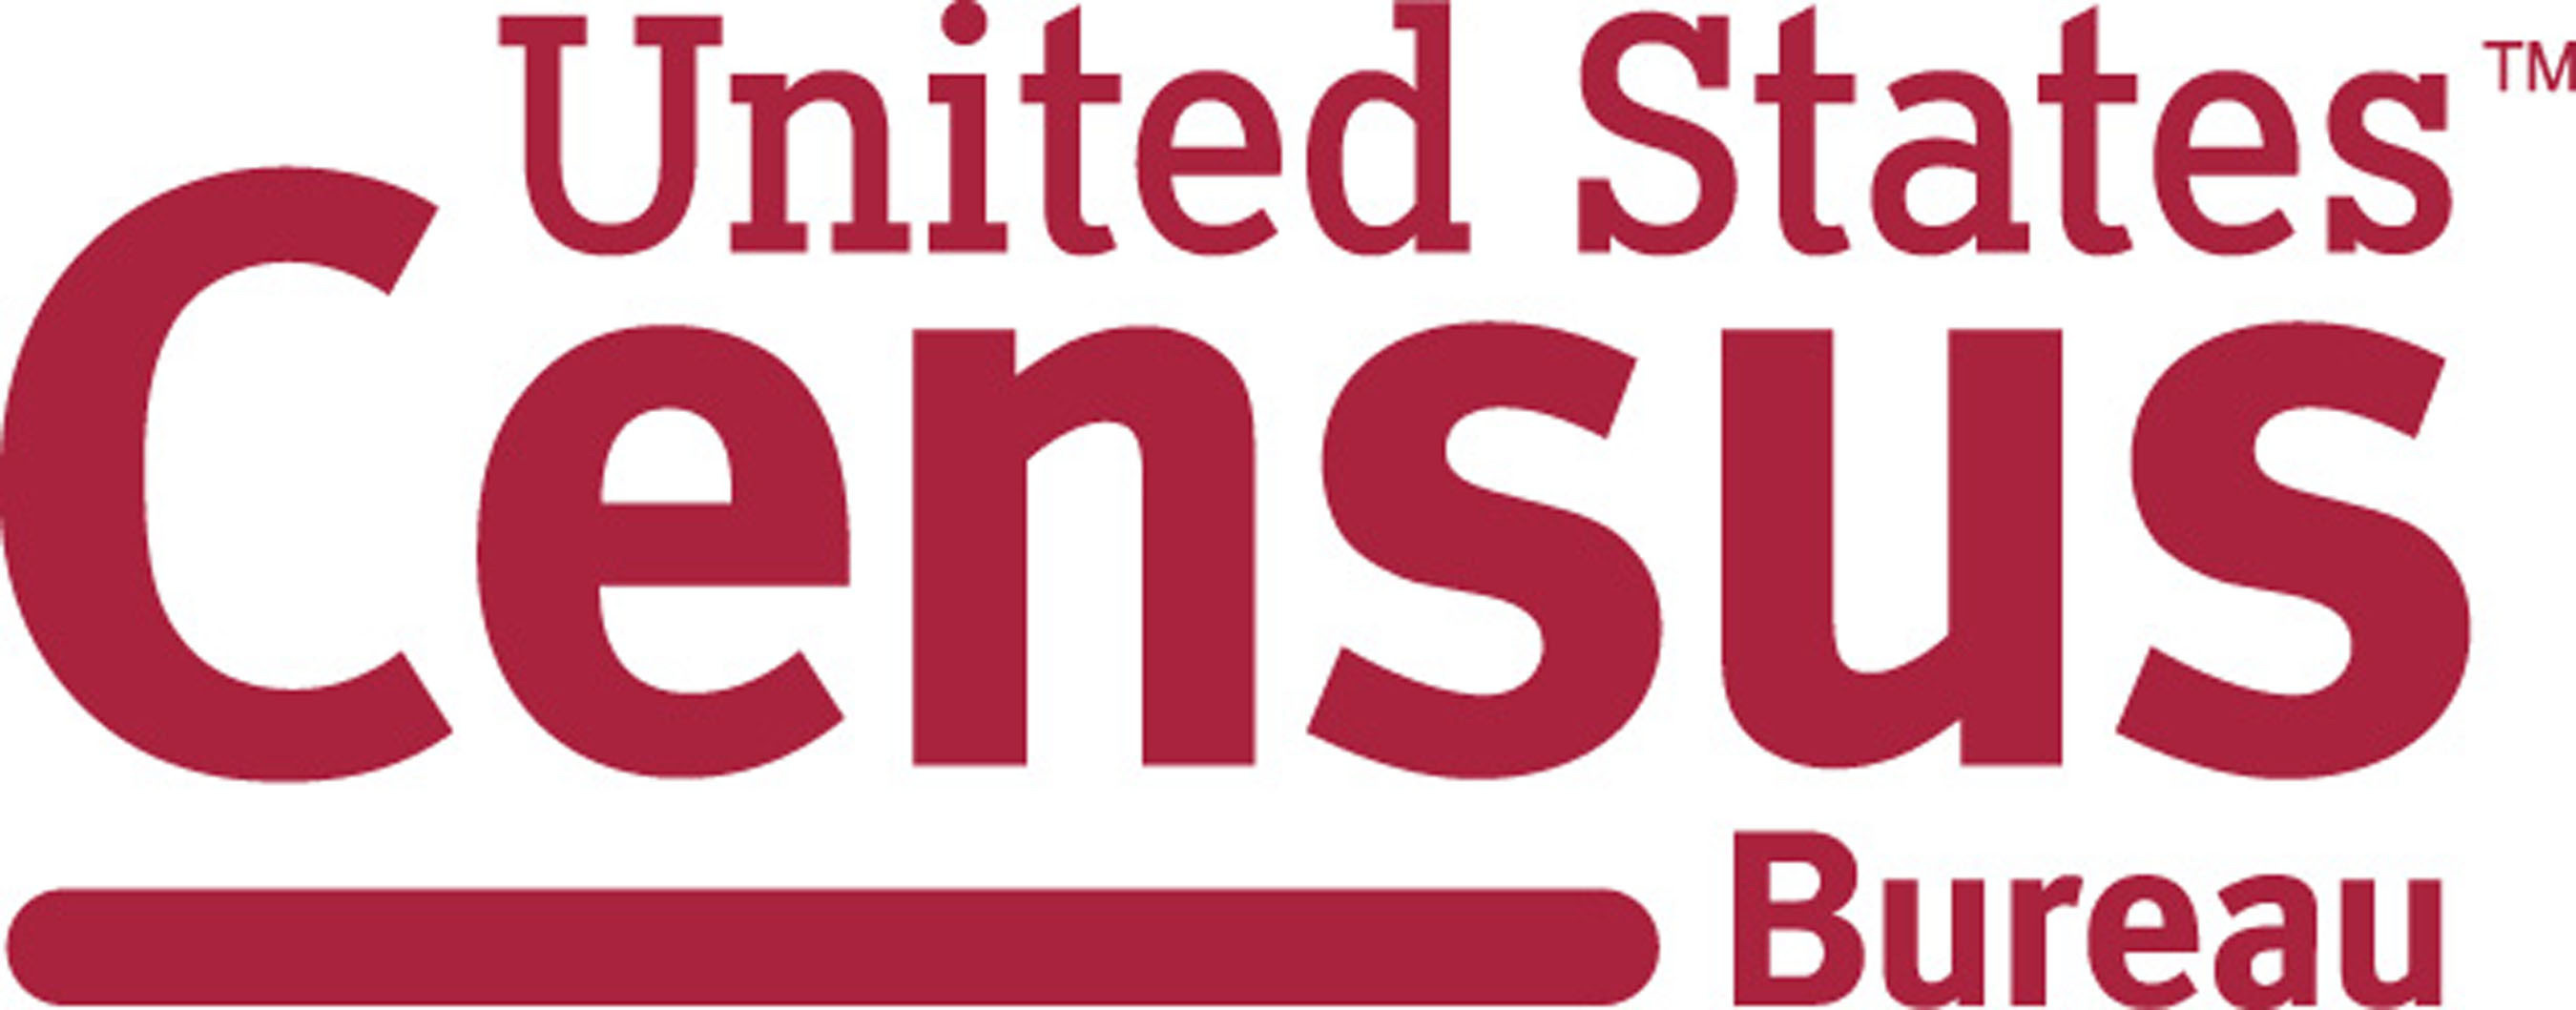 U.S. Census Bureau Logo. (PRNewsFoto/U.S. Census Bureau)